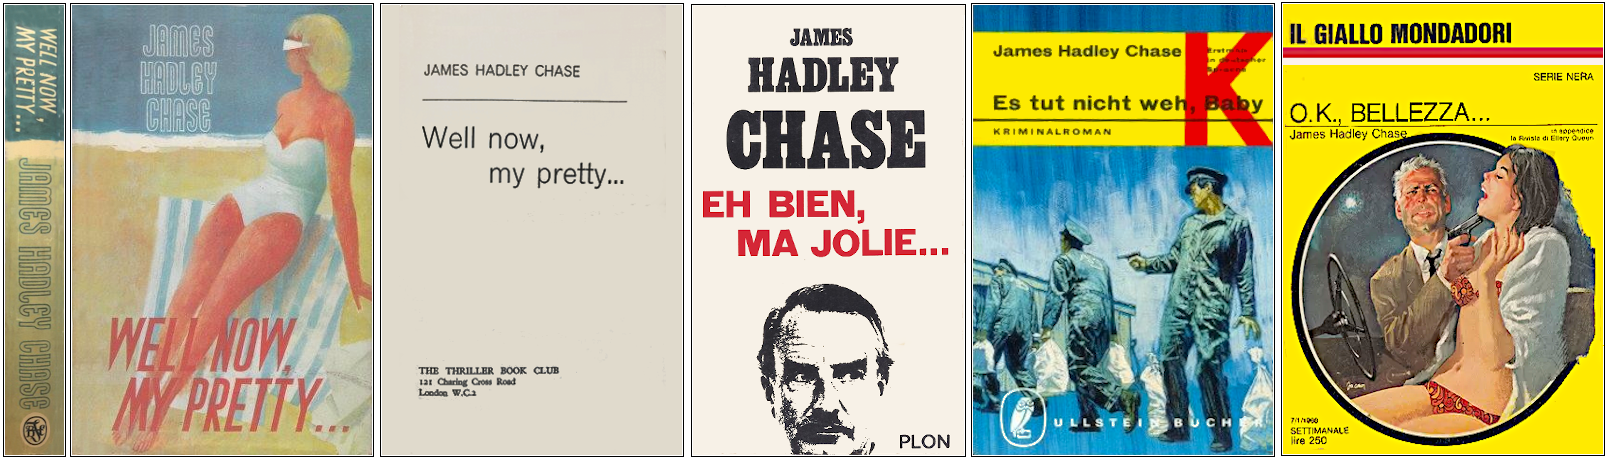 James Hadley Chase - Eh bien, ma jolie... - Éditions The Thriller Book Club, Plon, Ullstein Bücher et Mondadori